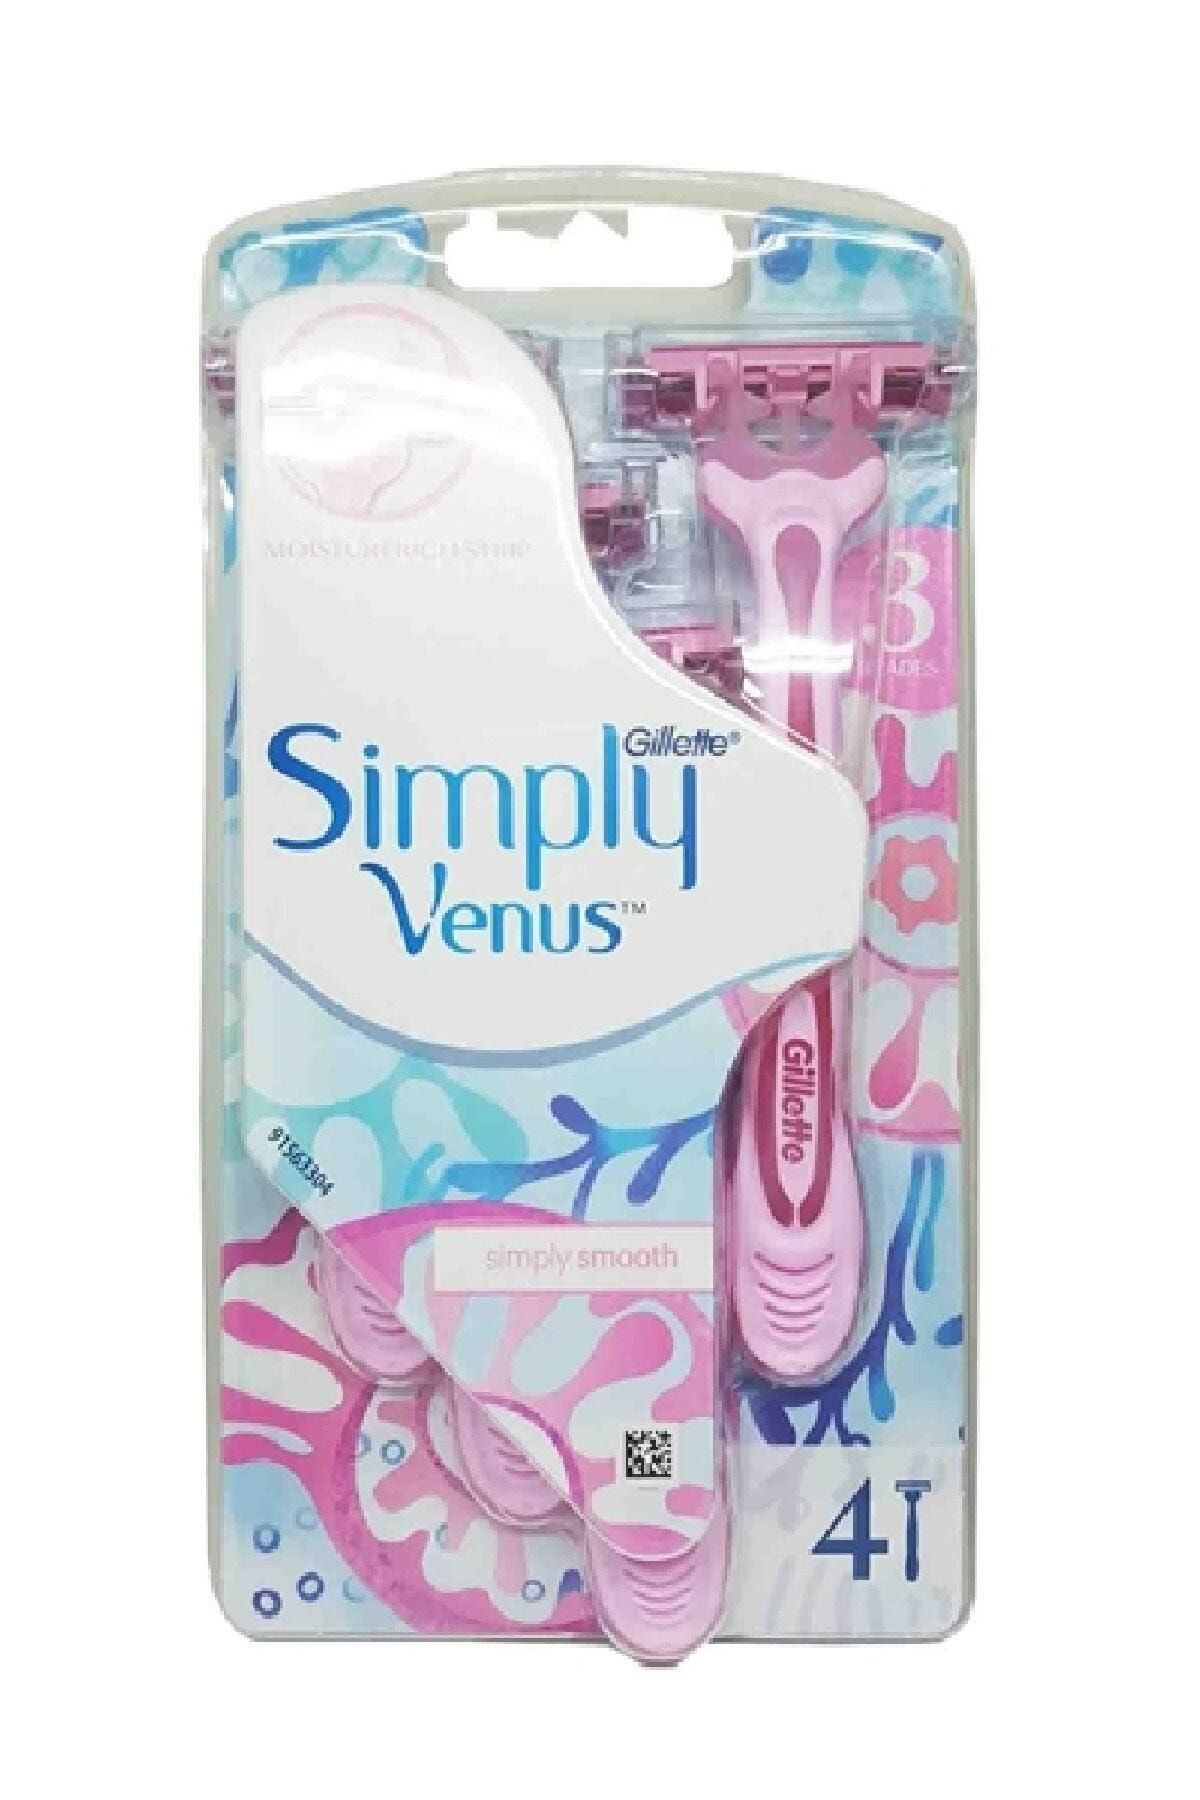 Venüs Gillette Venus Simply3 Kadın Tıraş Bıçağı 4'lü Yeni